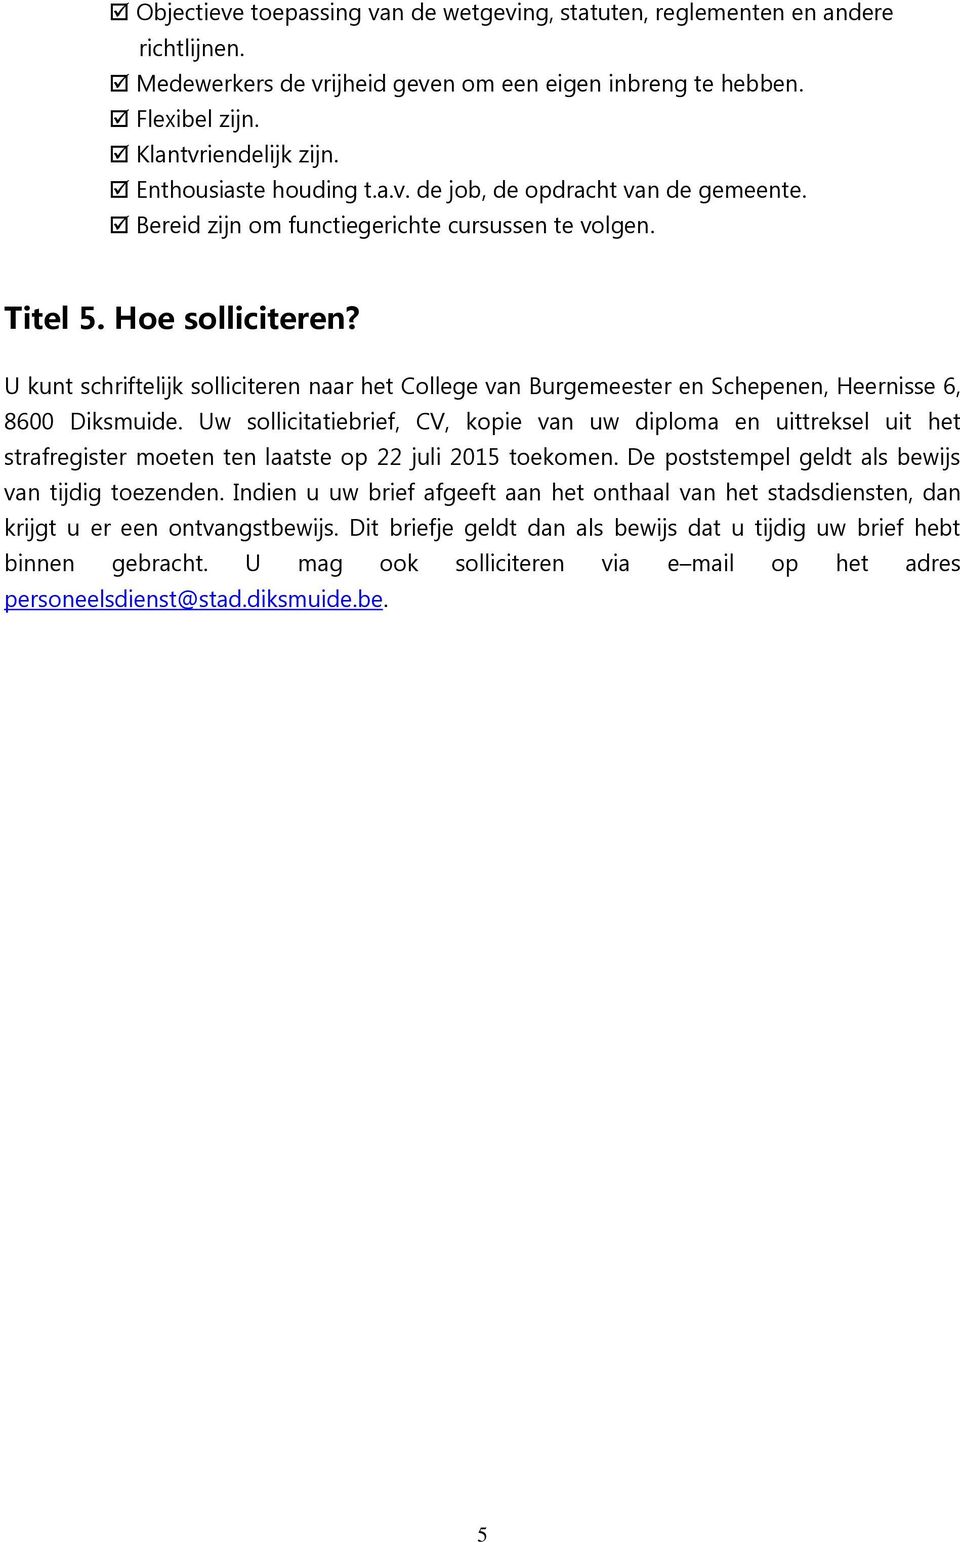 U kunt schriftelijk solliciteren naar het College van Burgemeester en Schepenen, Heernisse 6, 8600 Diksmuide.